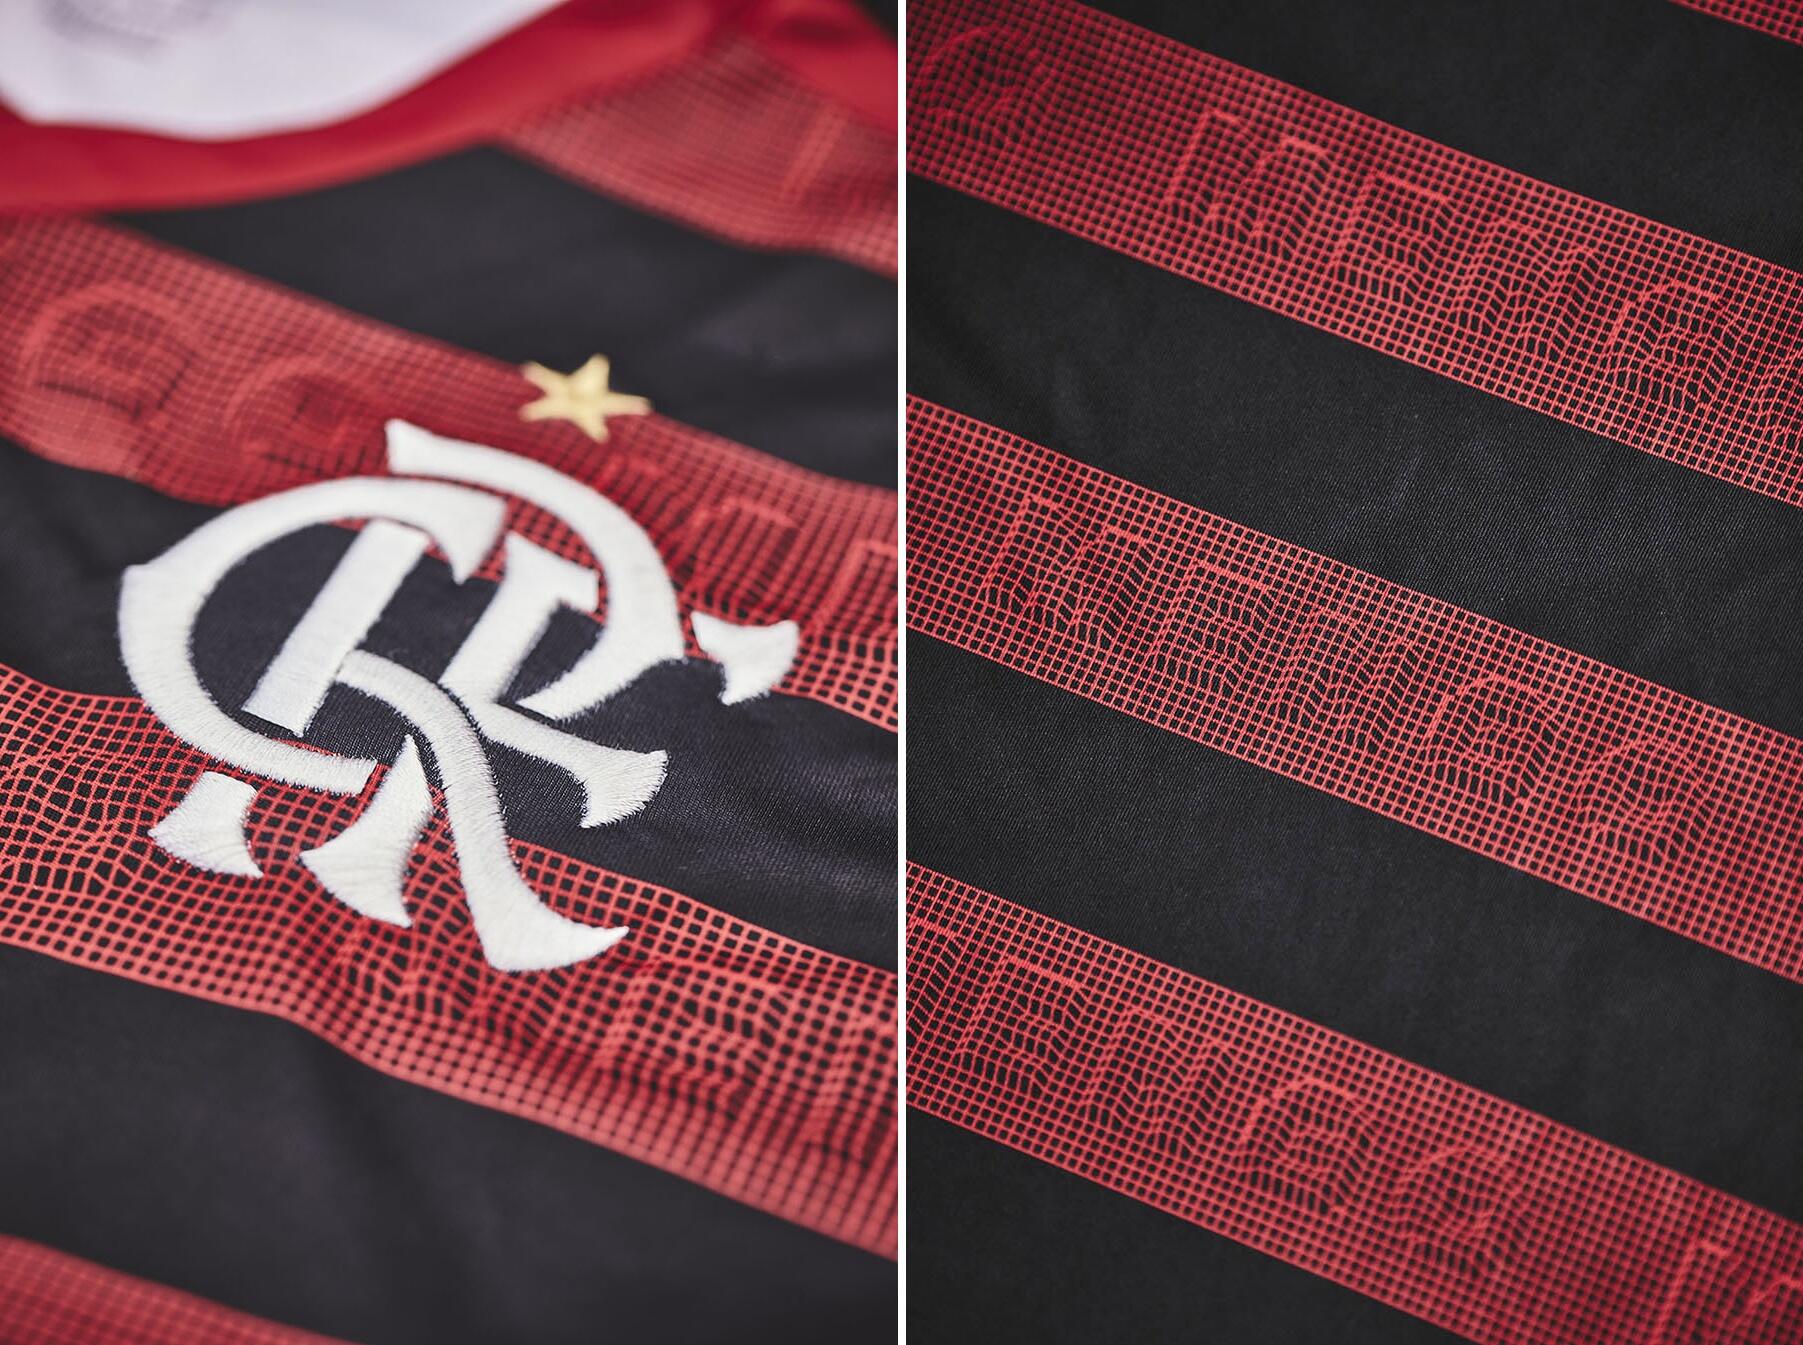 Camisa do Flamengo 2019-2020 - Adidas